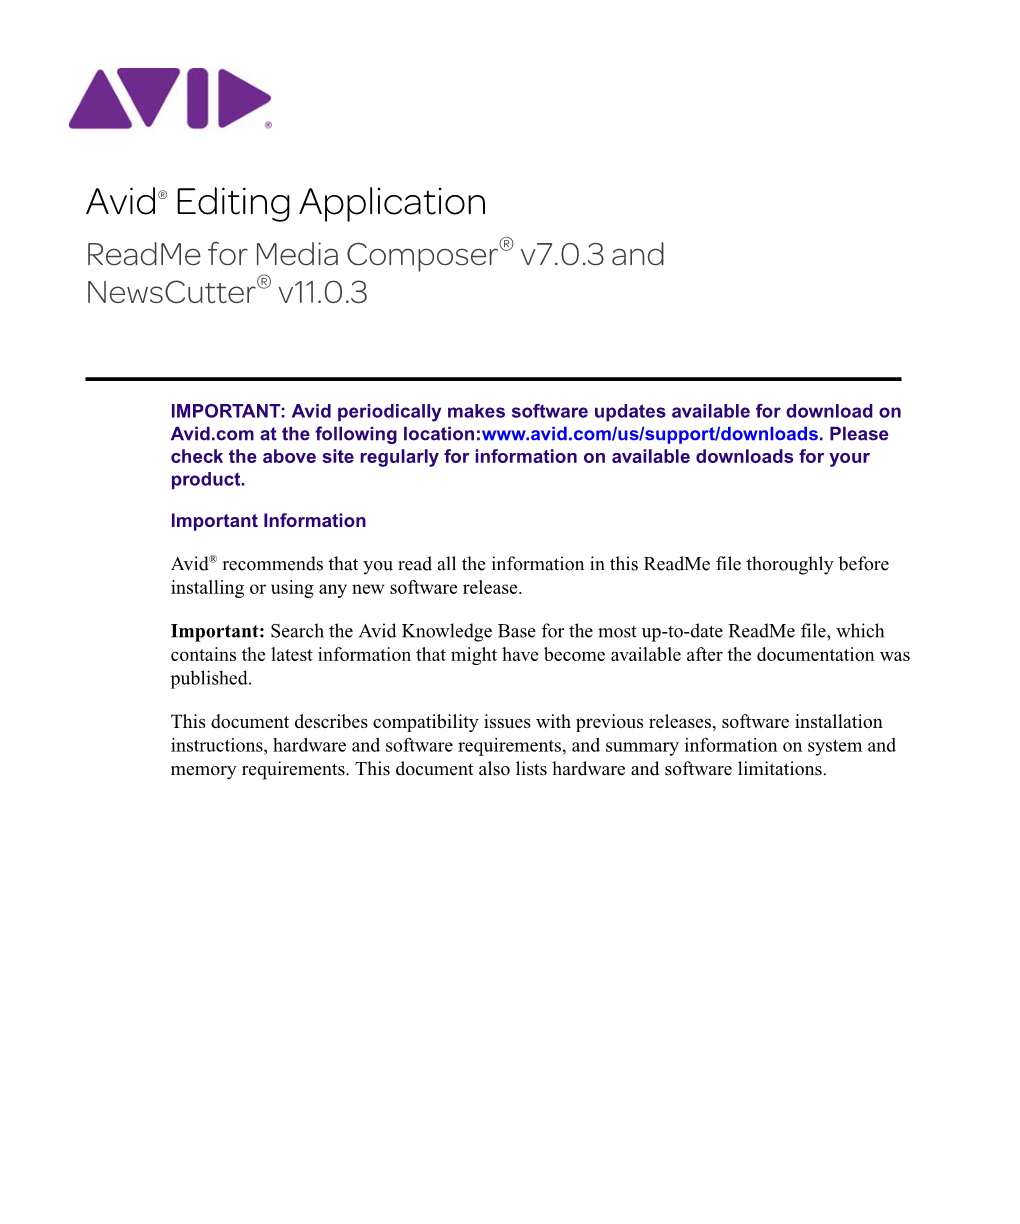 Avid® Editing Application Readme for Media Composer® V7.0.3 and Newscutter® V11.0.3